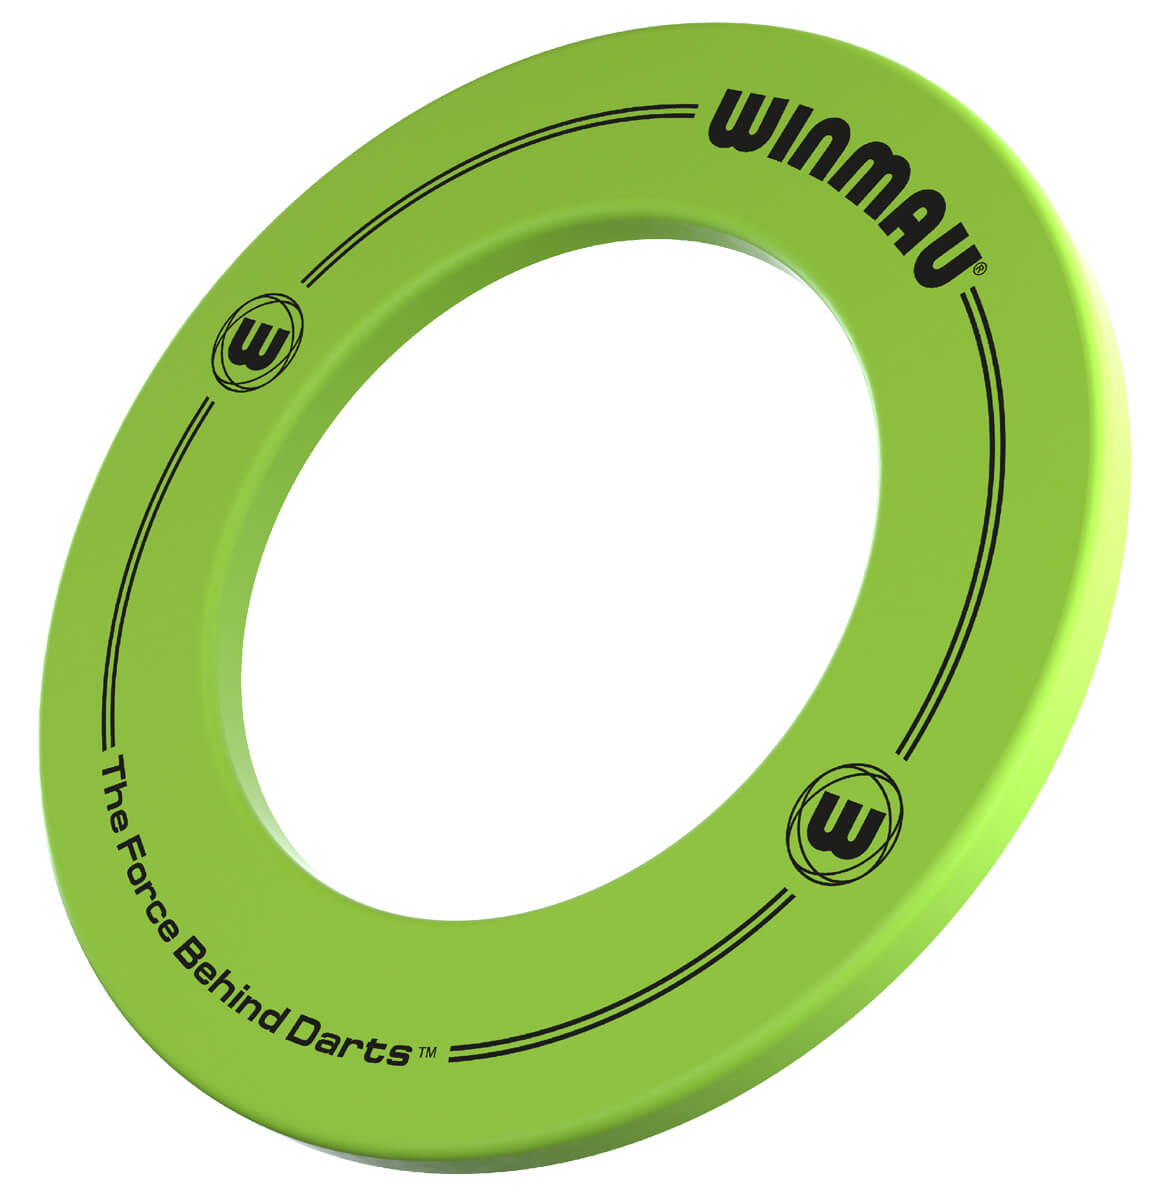  Winmau Dartboard Surround mit Aufdruck - Grün